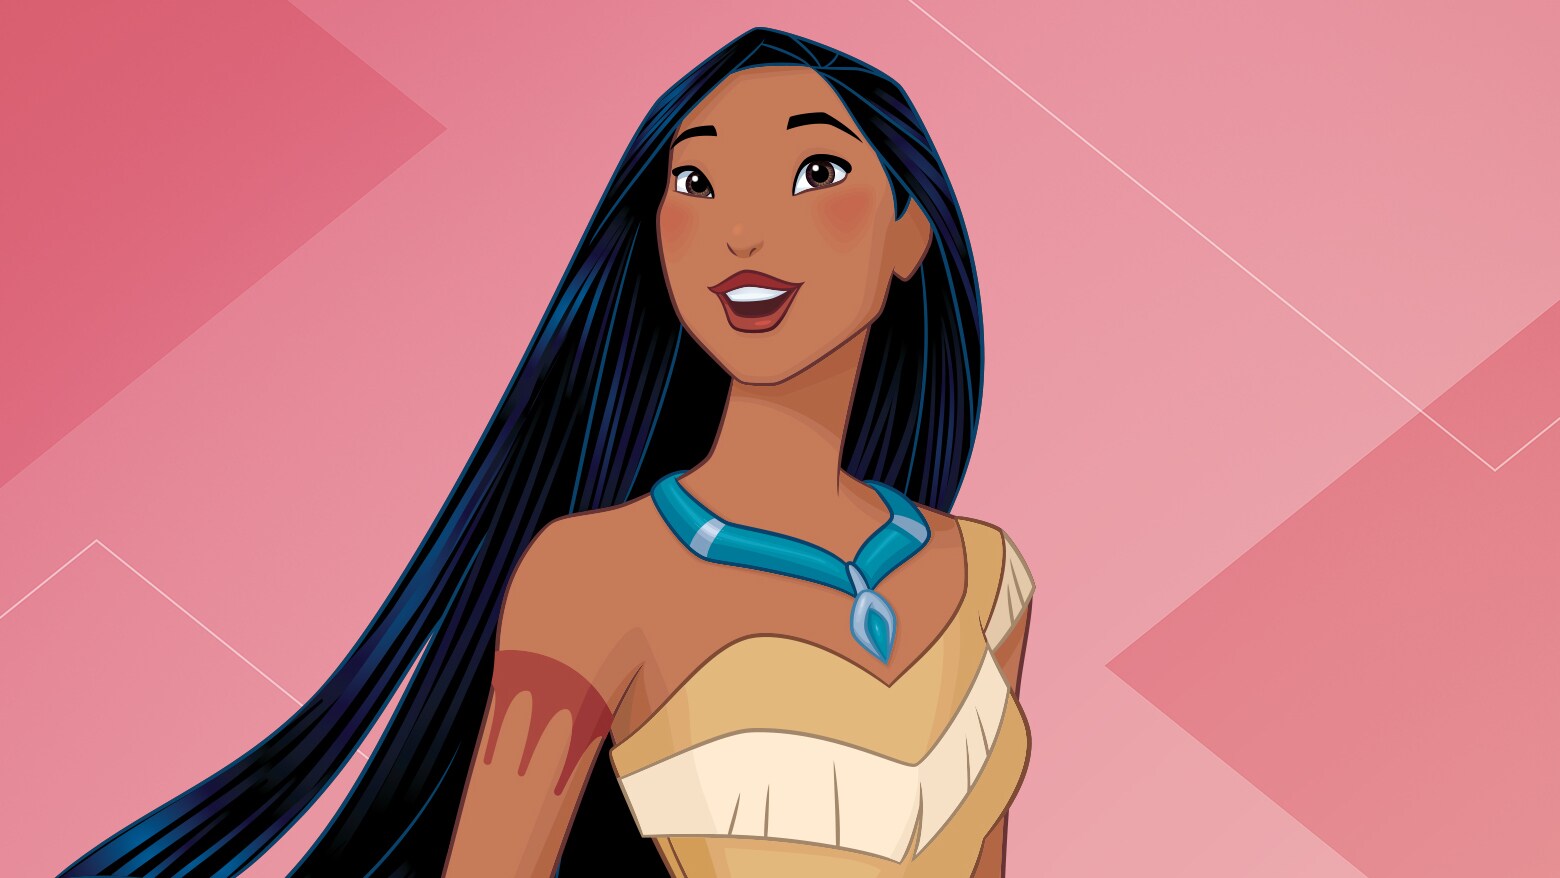 Os 4 fatos curiosos que você não sabia sobre 'Pocahontas'